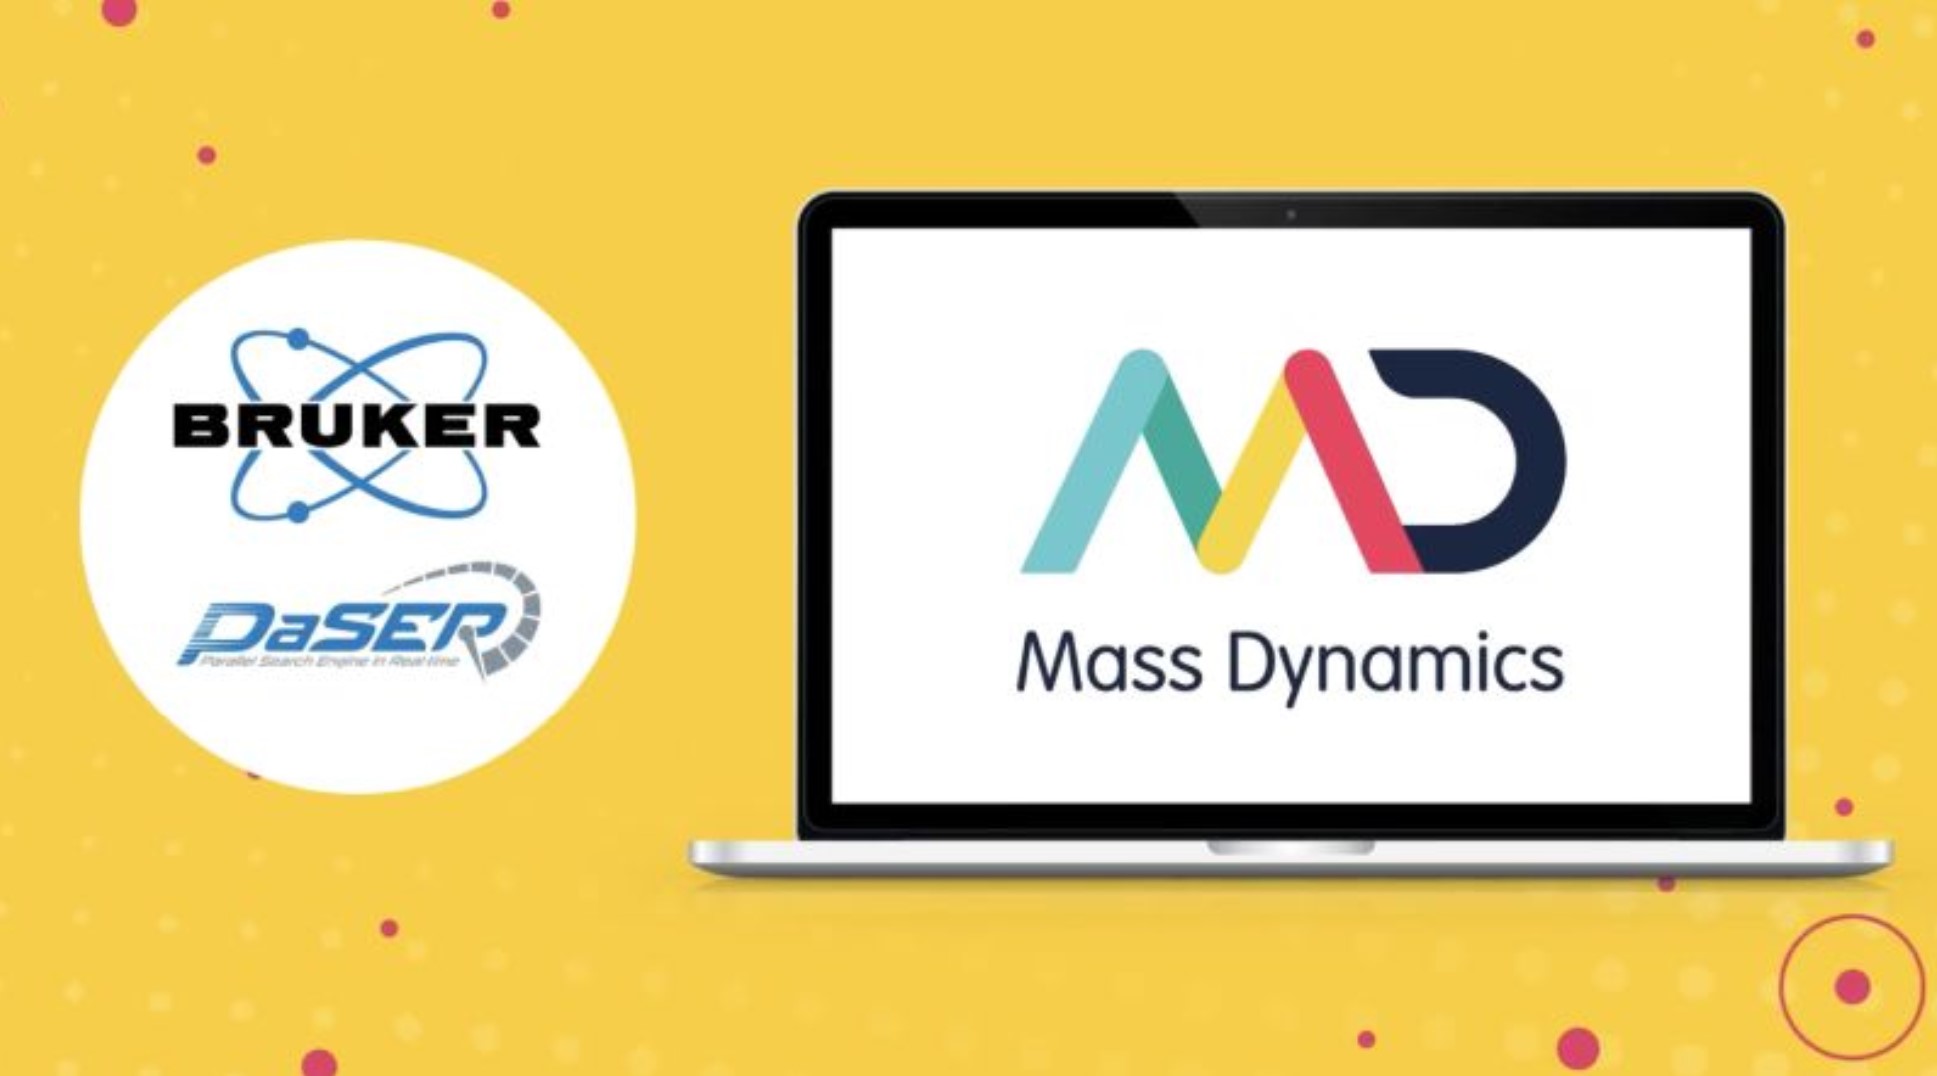 Mass Dynamics - Bruker partnersip